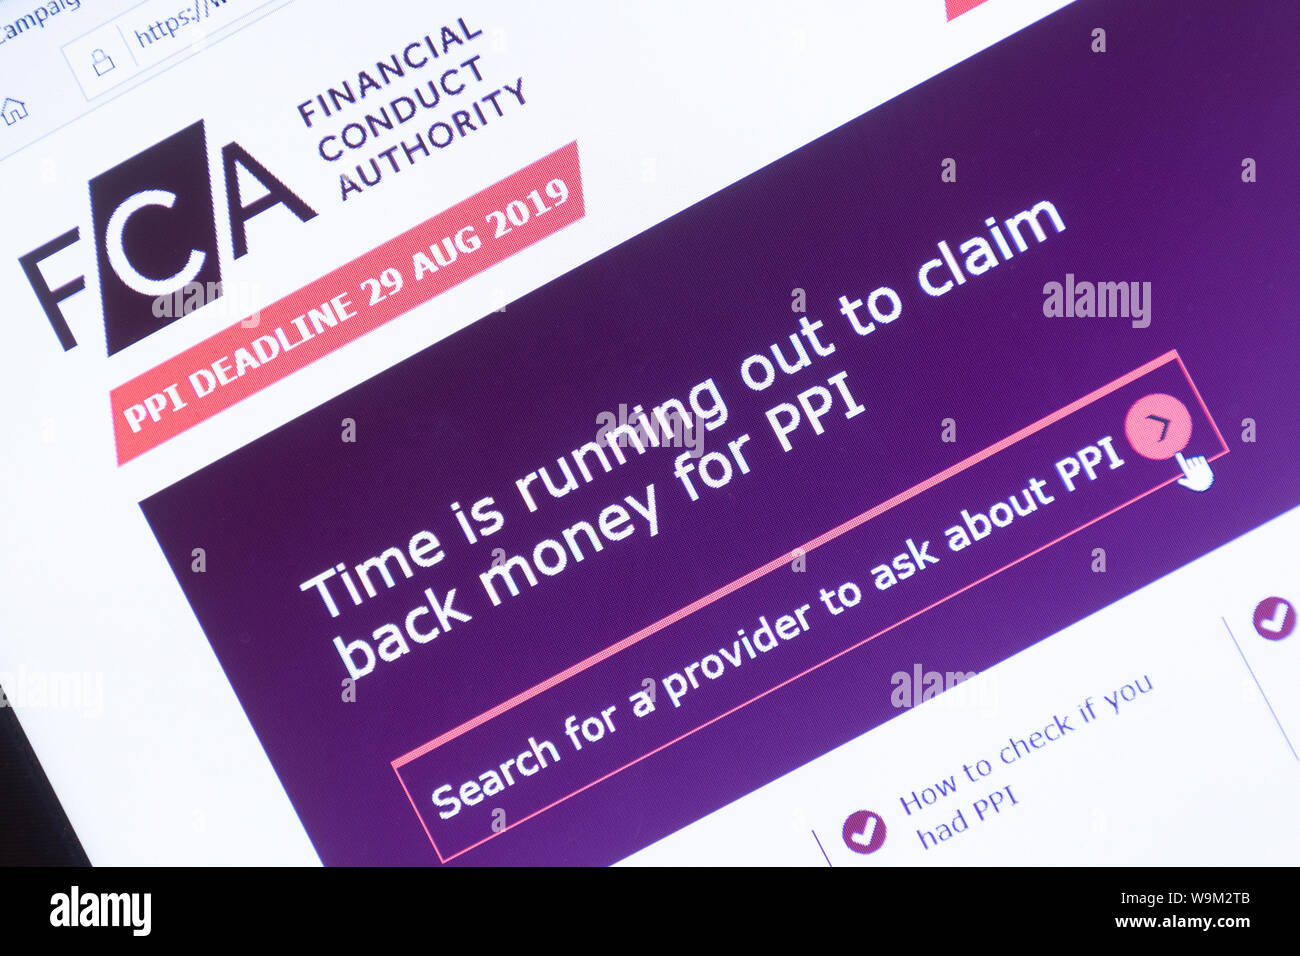 PPI rivendicazione scadenza 29 agosto 2019 sull'FCA (comportamento finanziario competente) Sito web visualizzato su uno schermo portatile screenshot, UK. Foto Stock